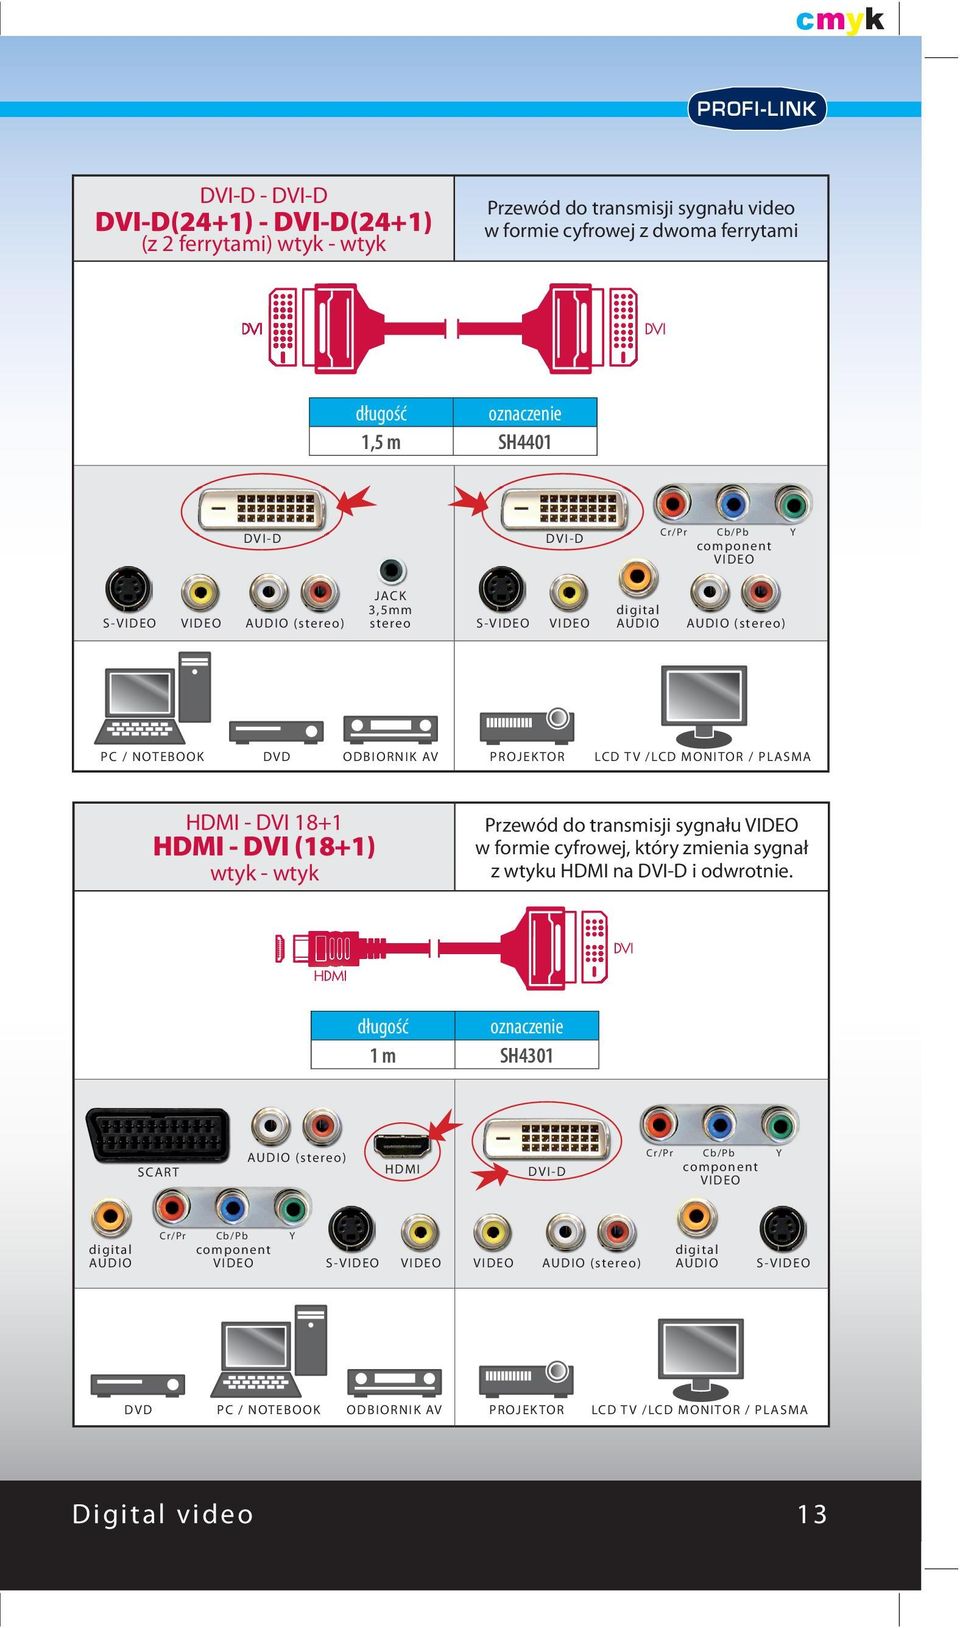 PLASMA HDMI - DVI 18+1 HDMI - DVI (18+1) Przewód do transmisji sygnału w formie cyfrowej, który zmienia sygnał z wtyku